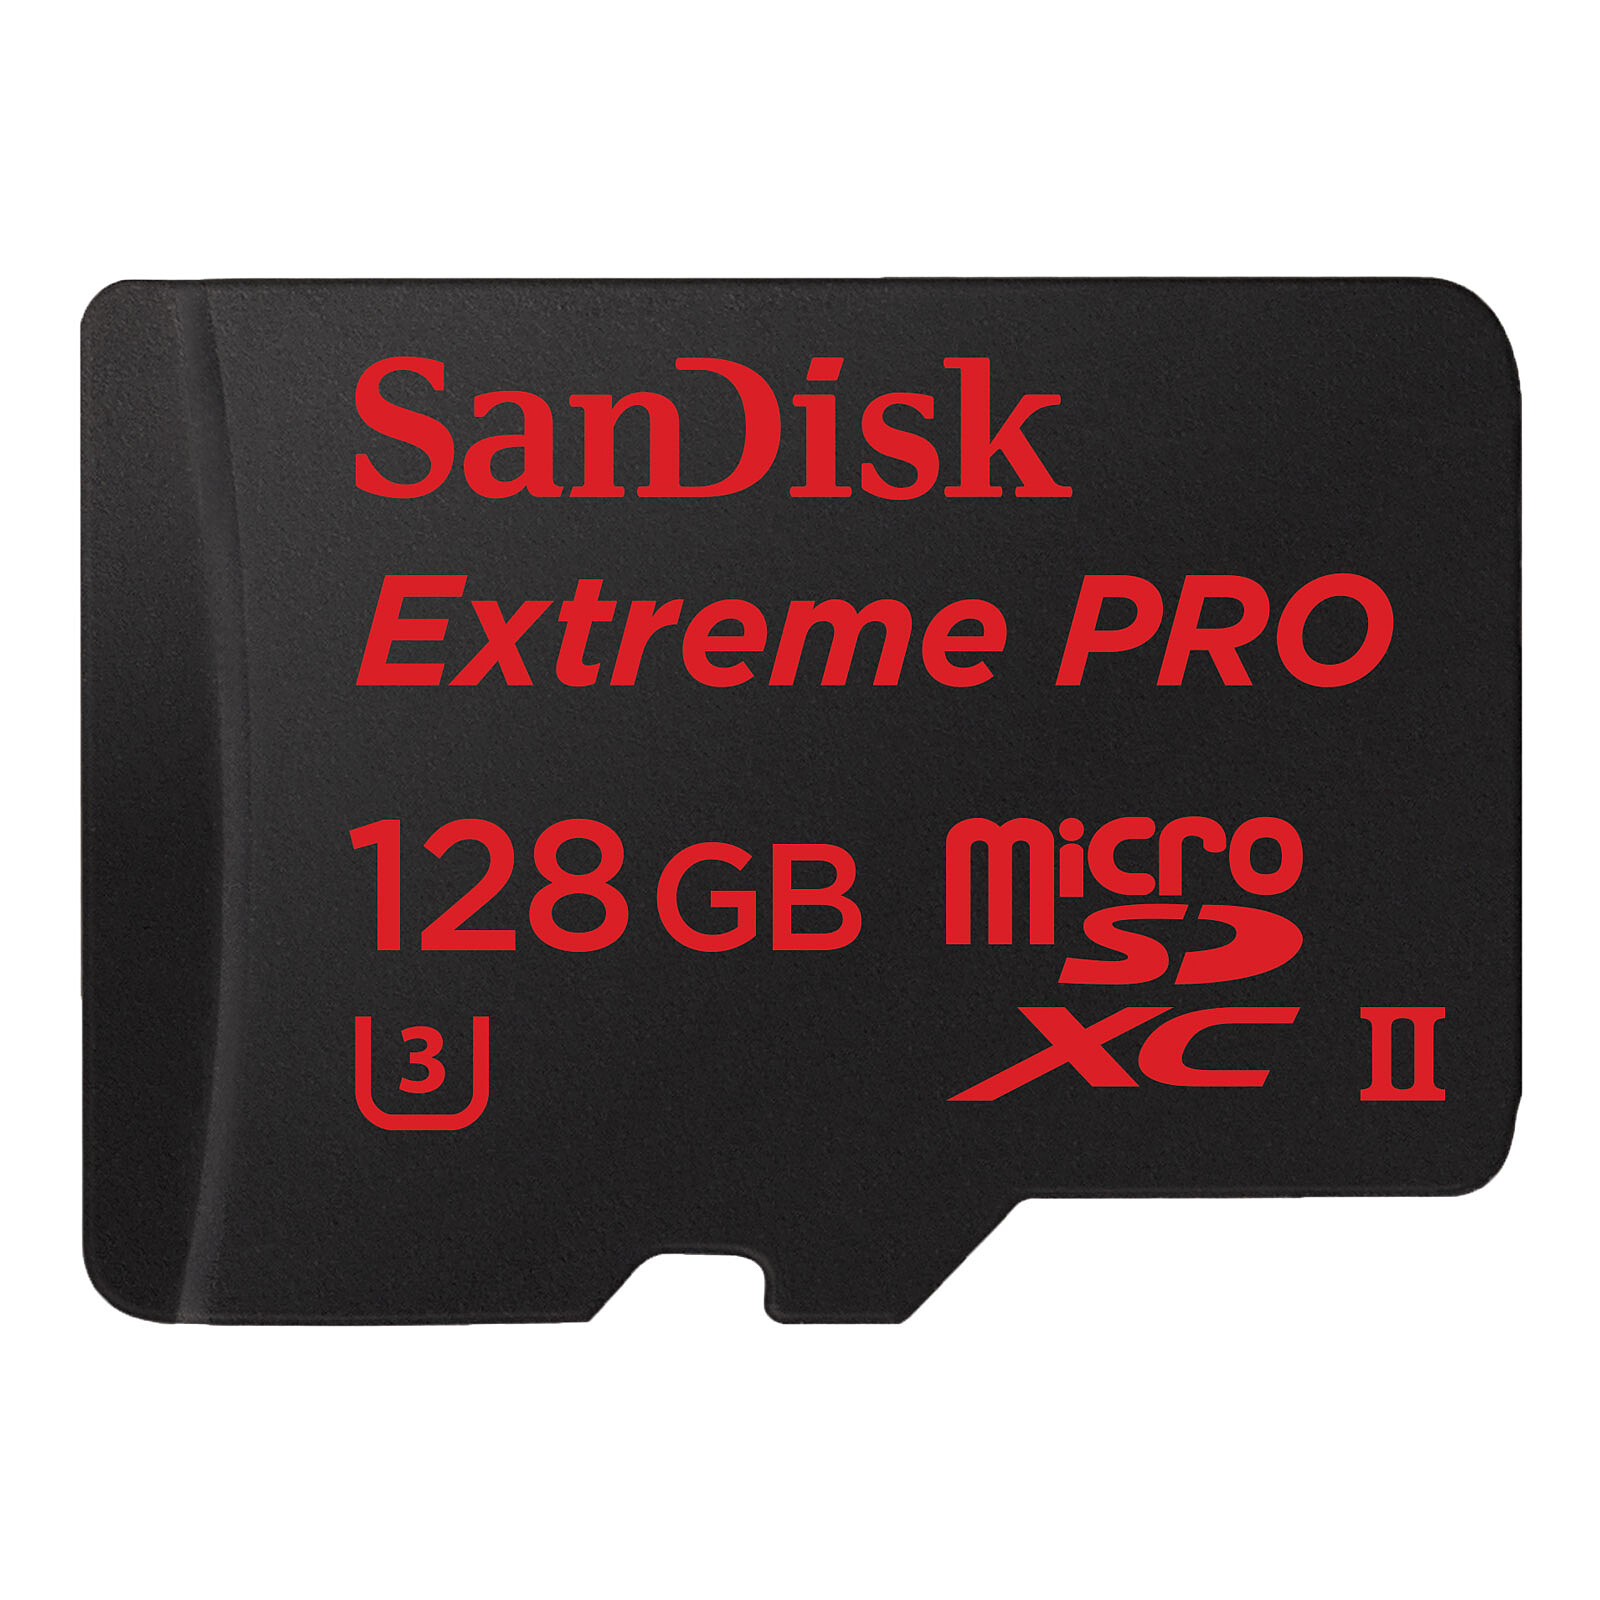 SanDisk Carte mémoire microSDHC 32 Go - Carte mémoire - Garantie 3 ans LDLC